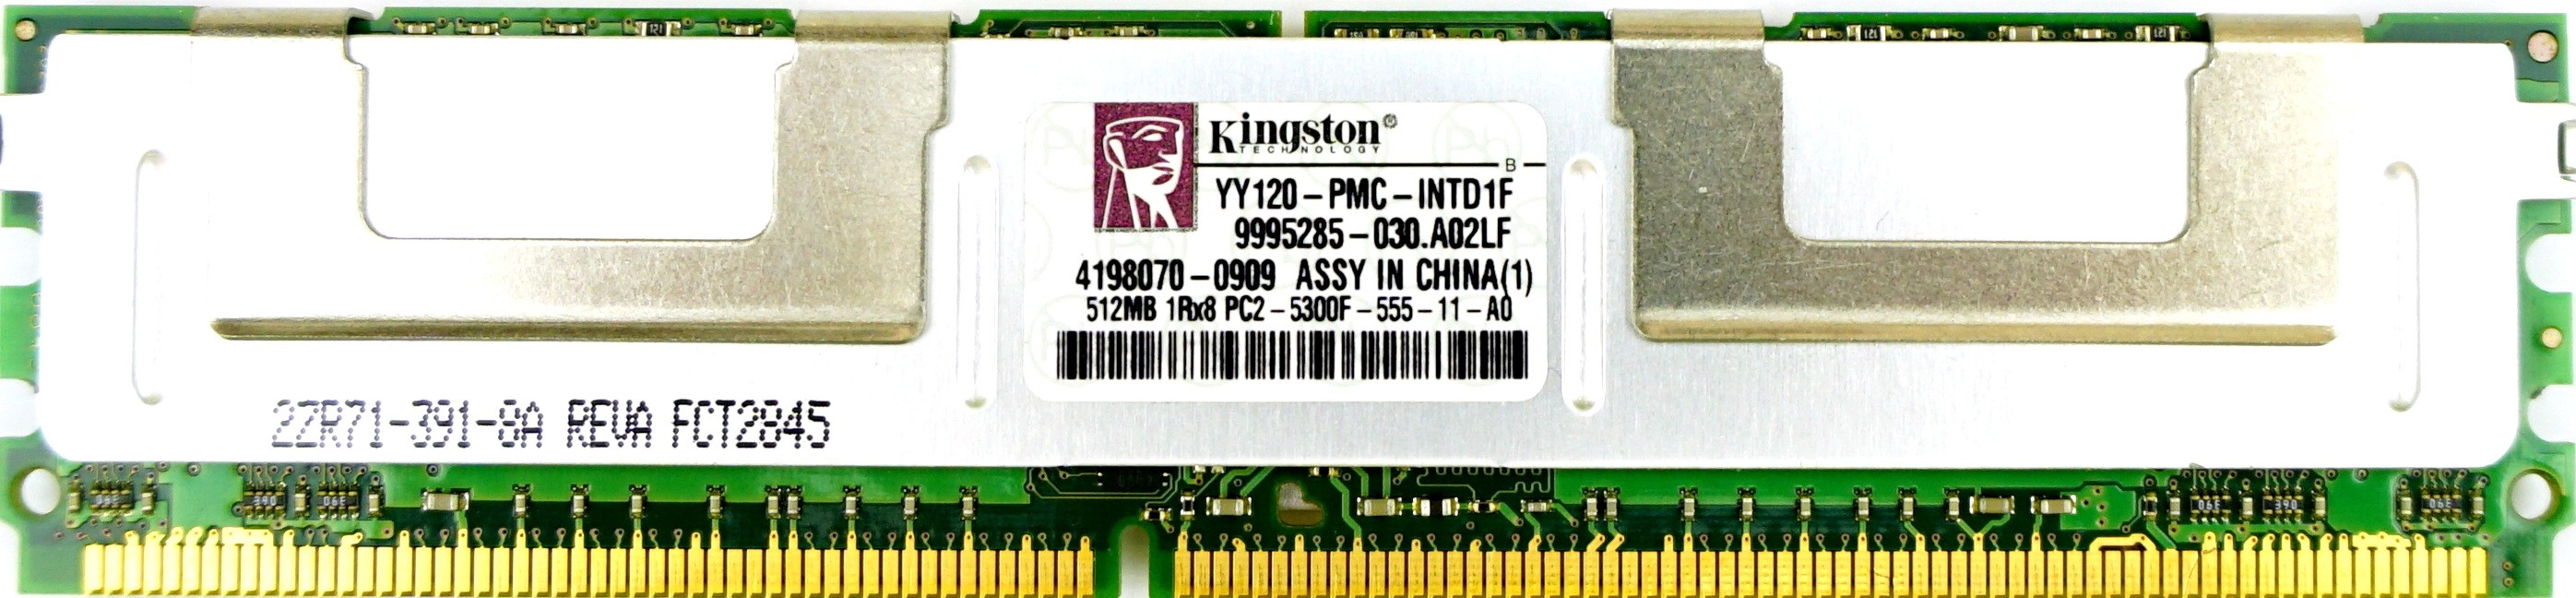 Kingston - 512MB PC2-5300F (DDR2-667Mhz, 1RX8)